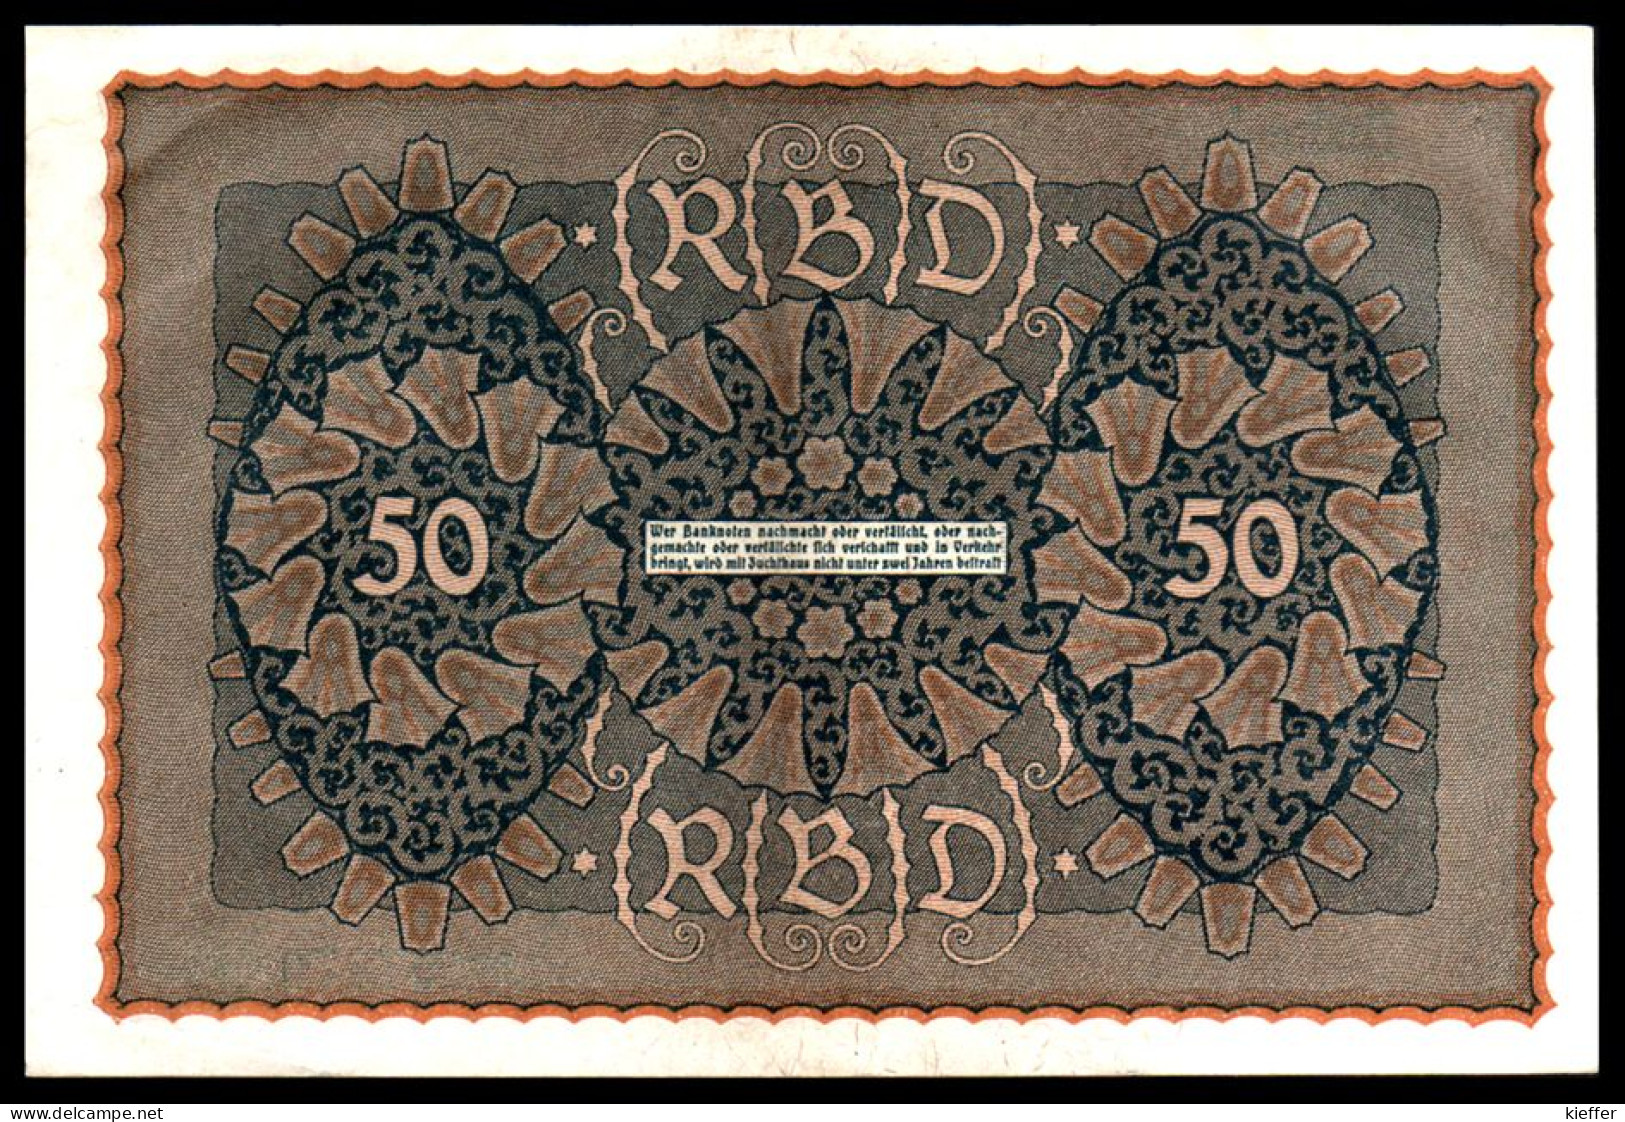 DEUTSCHLAND - ALLEMAGNE - 50 Mark Reichsbanknote - Série 4 - 1919 - P66 - AUNC / Pr Neuf - 50 Mark